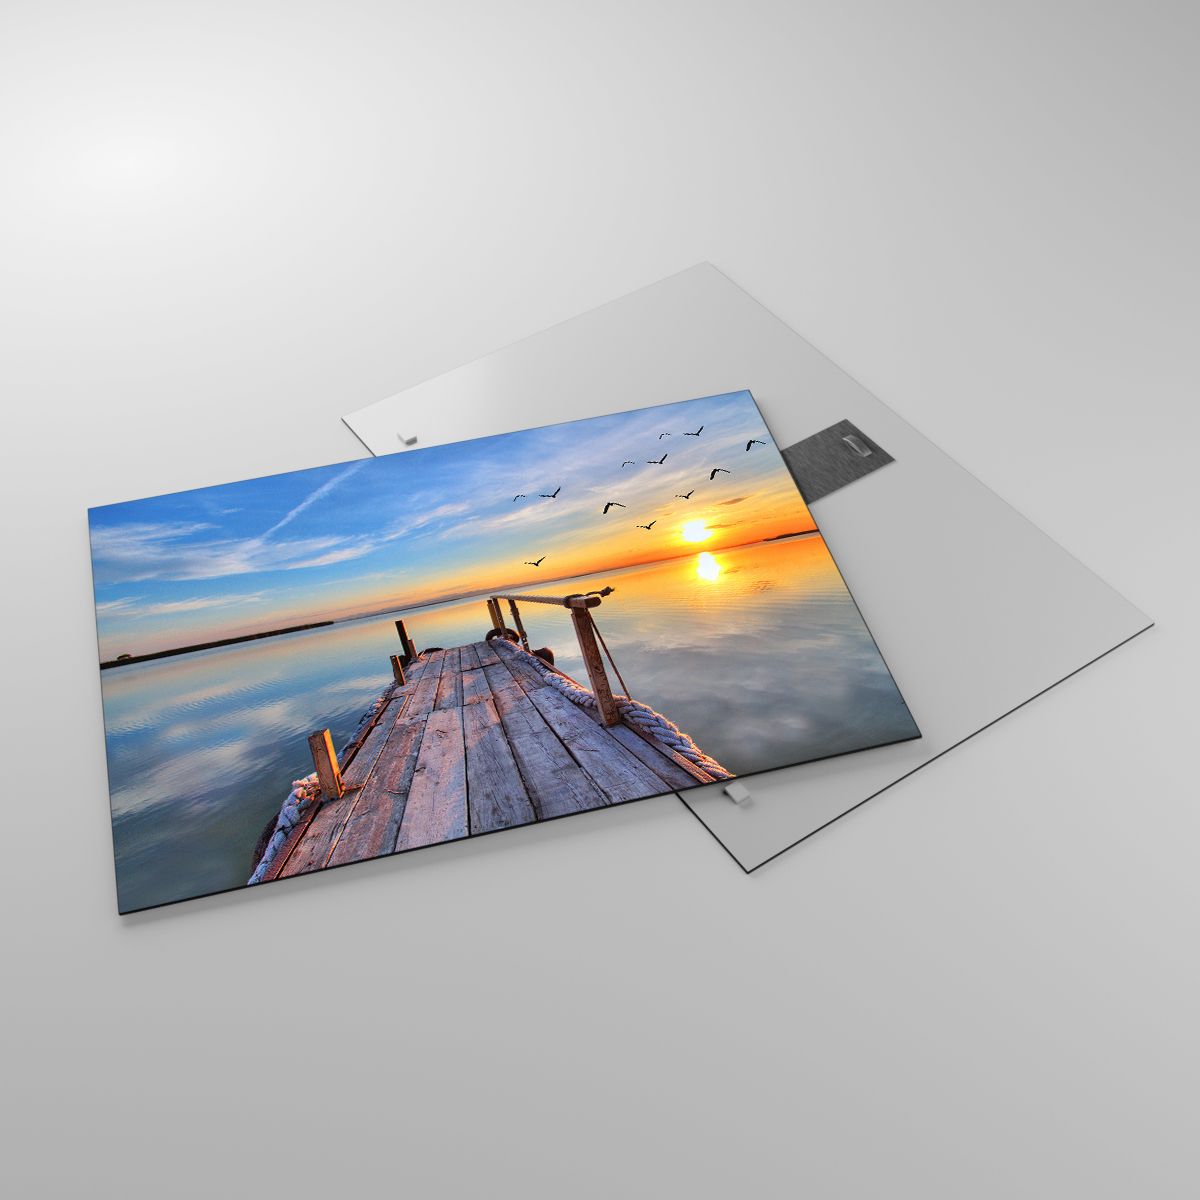 Glasbild Landschaft, Glasbild See, Glasbild Holzbrücke, Glasbild Der Sonnenuntergang, Glasbild Oberfläche Des Wassers